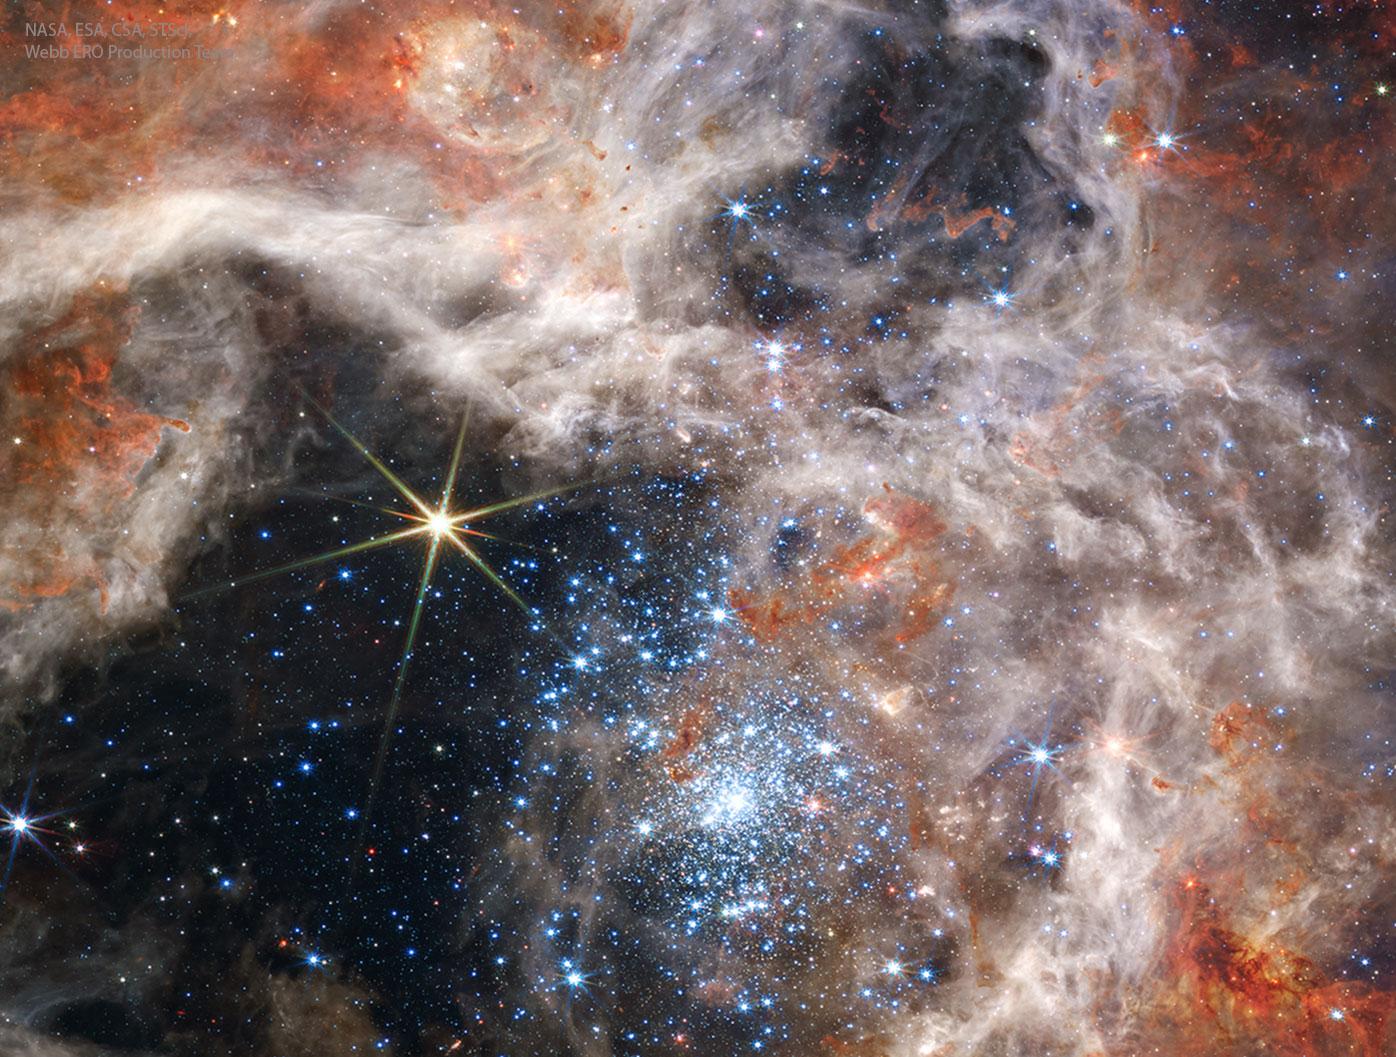 عنقود النجوم ر136 بالضوء تحت الأحمر القريب كما التقطه تلسكوب جيمس وِبّ الفضائي.